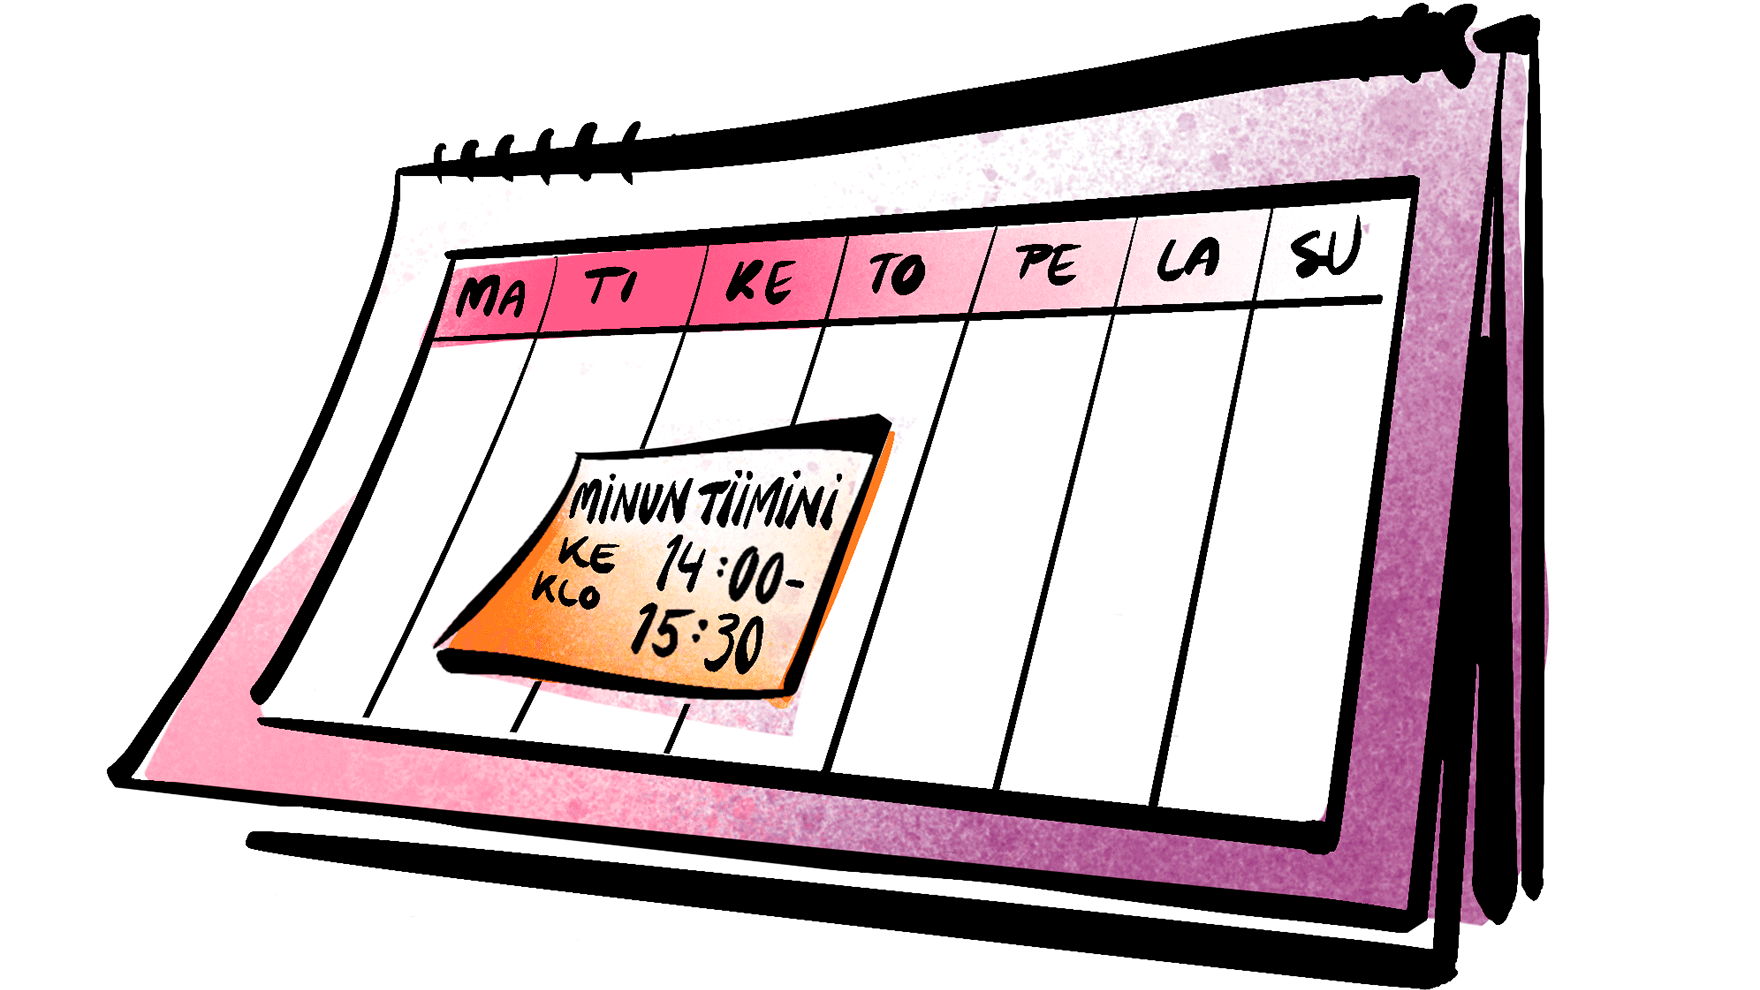 Piirroskuva kalenterista, jossa kerrotaan Minun tiimini kokoontumisajankohta.